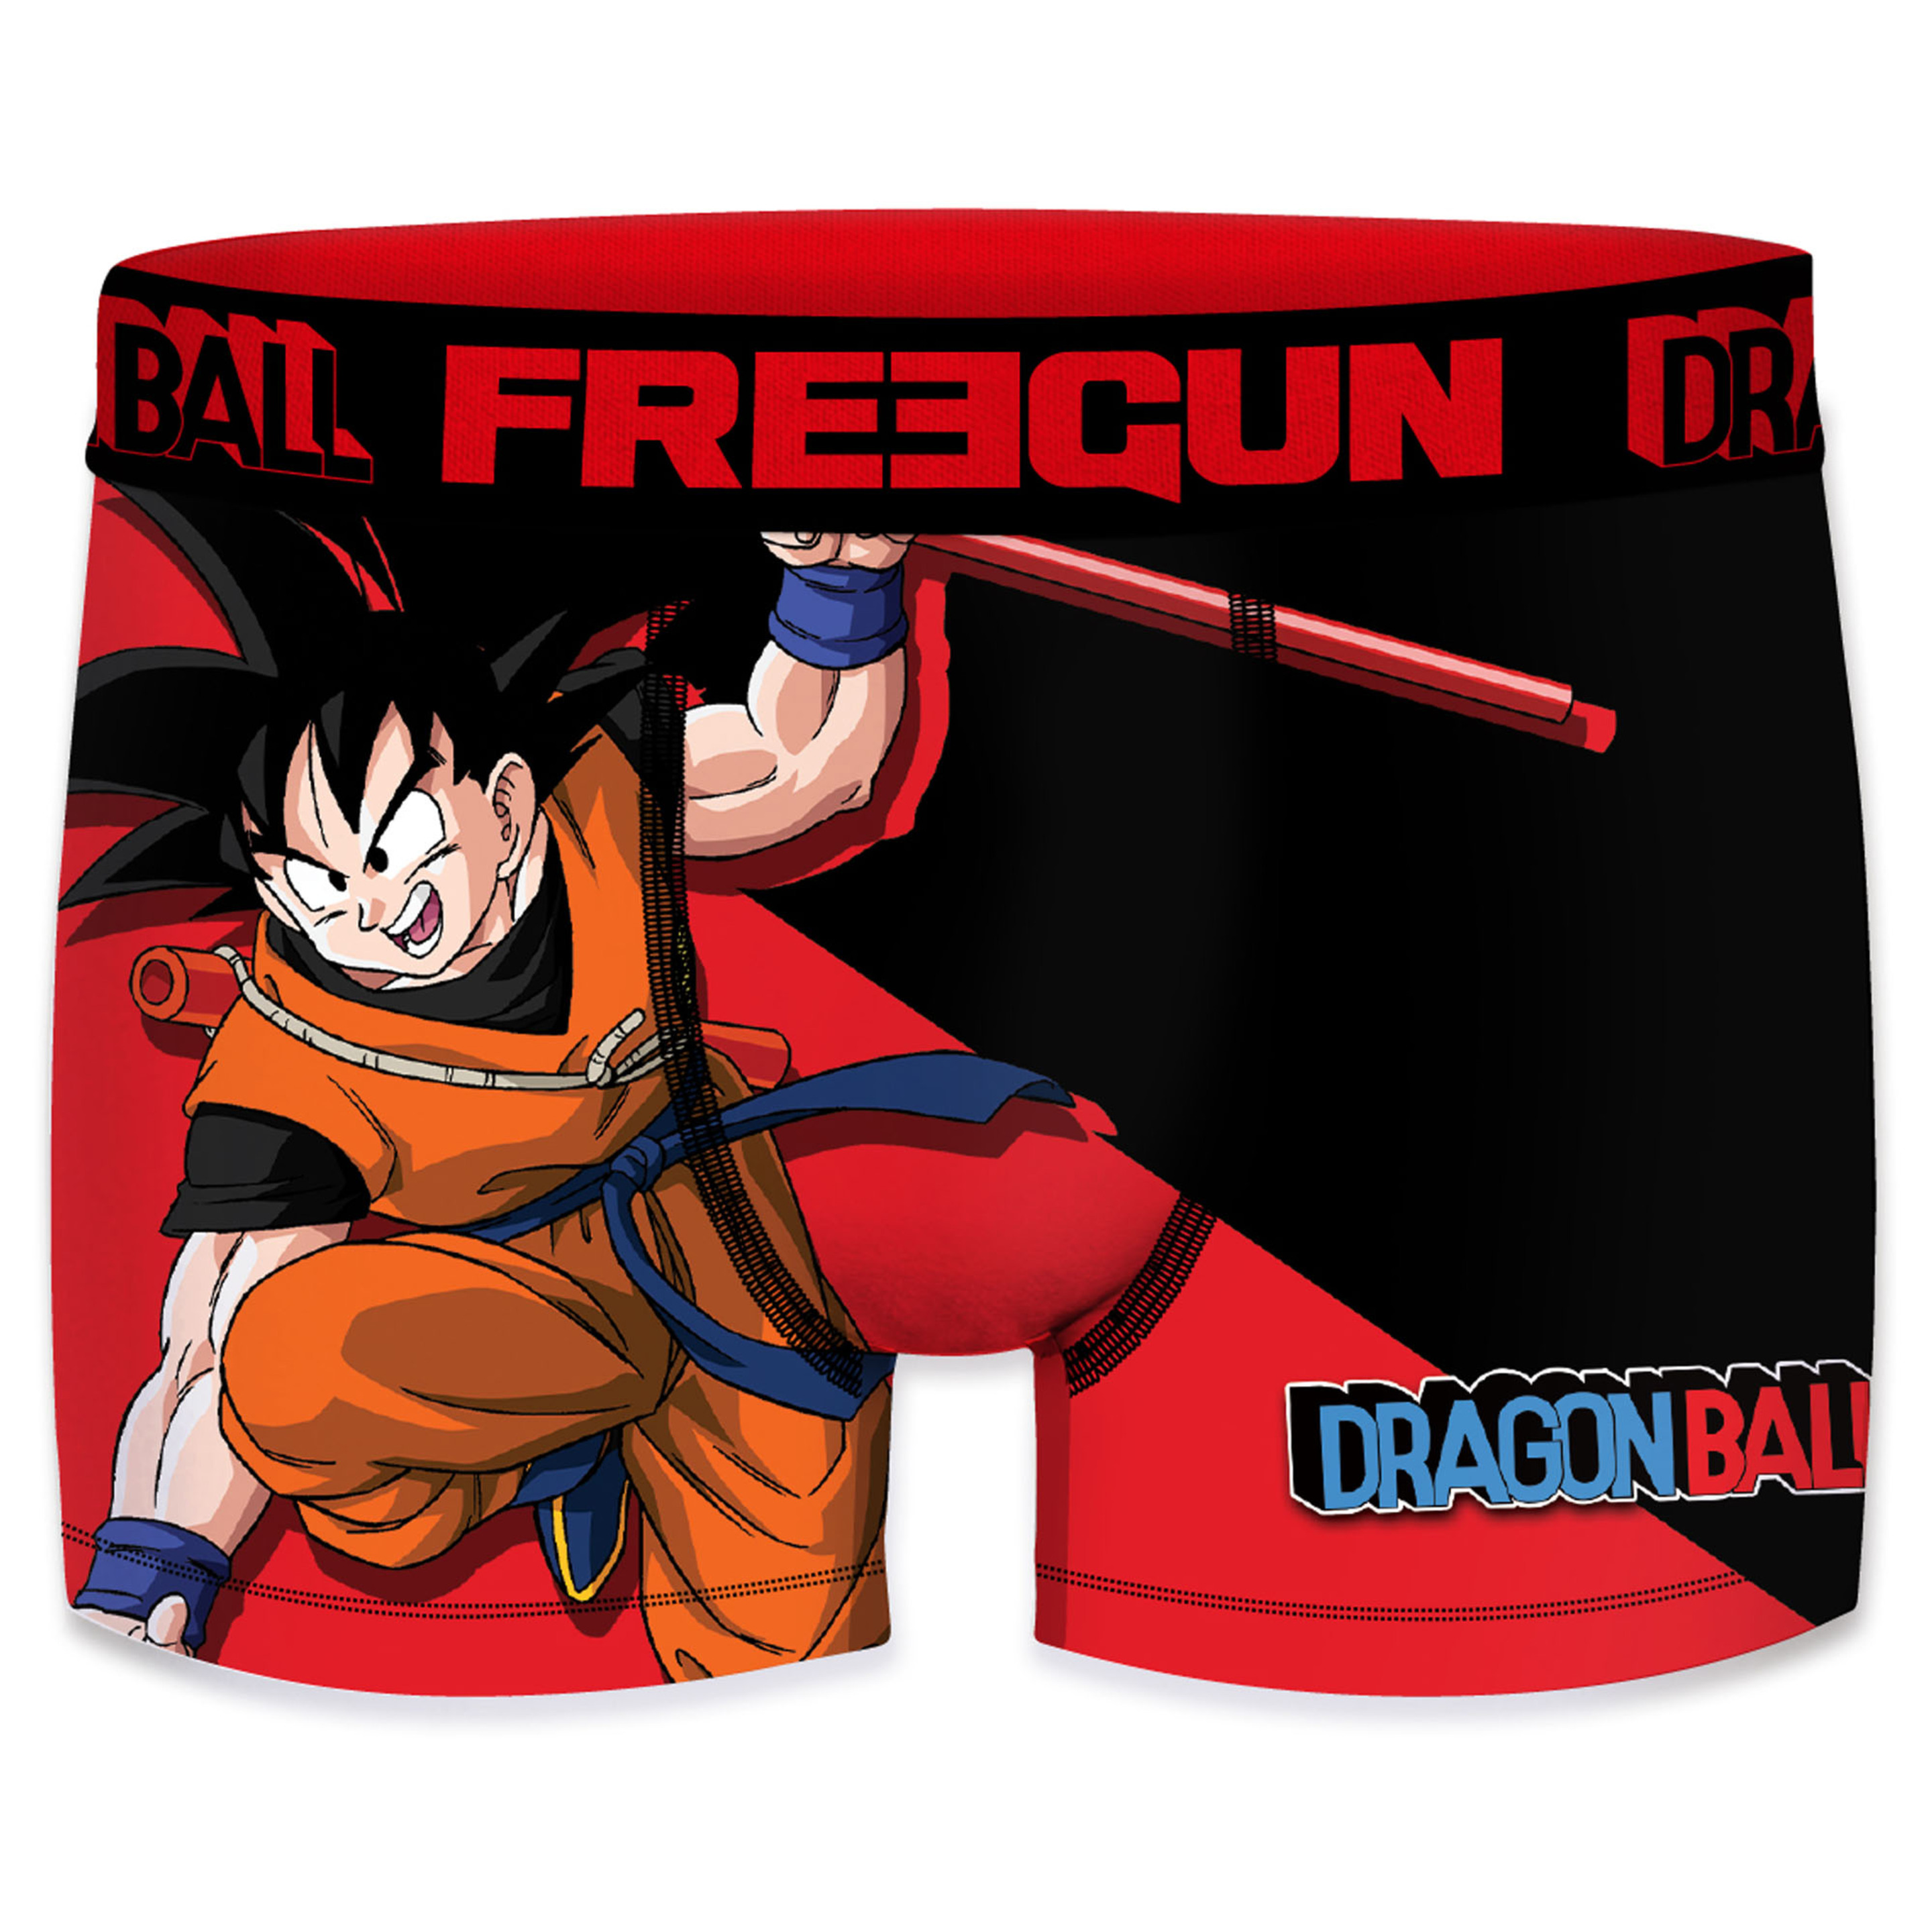 Calzoncillo Freegun Dragon Ball - multicolor - 